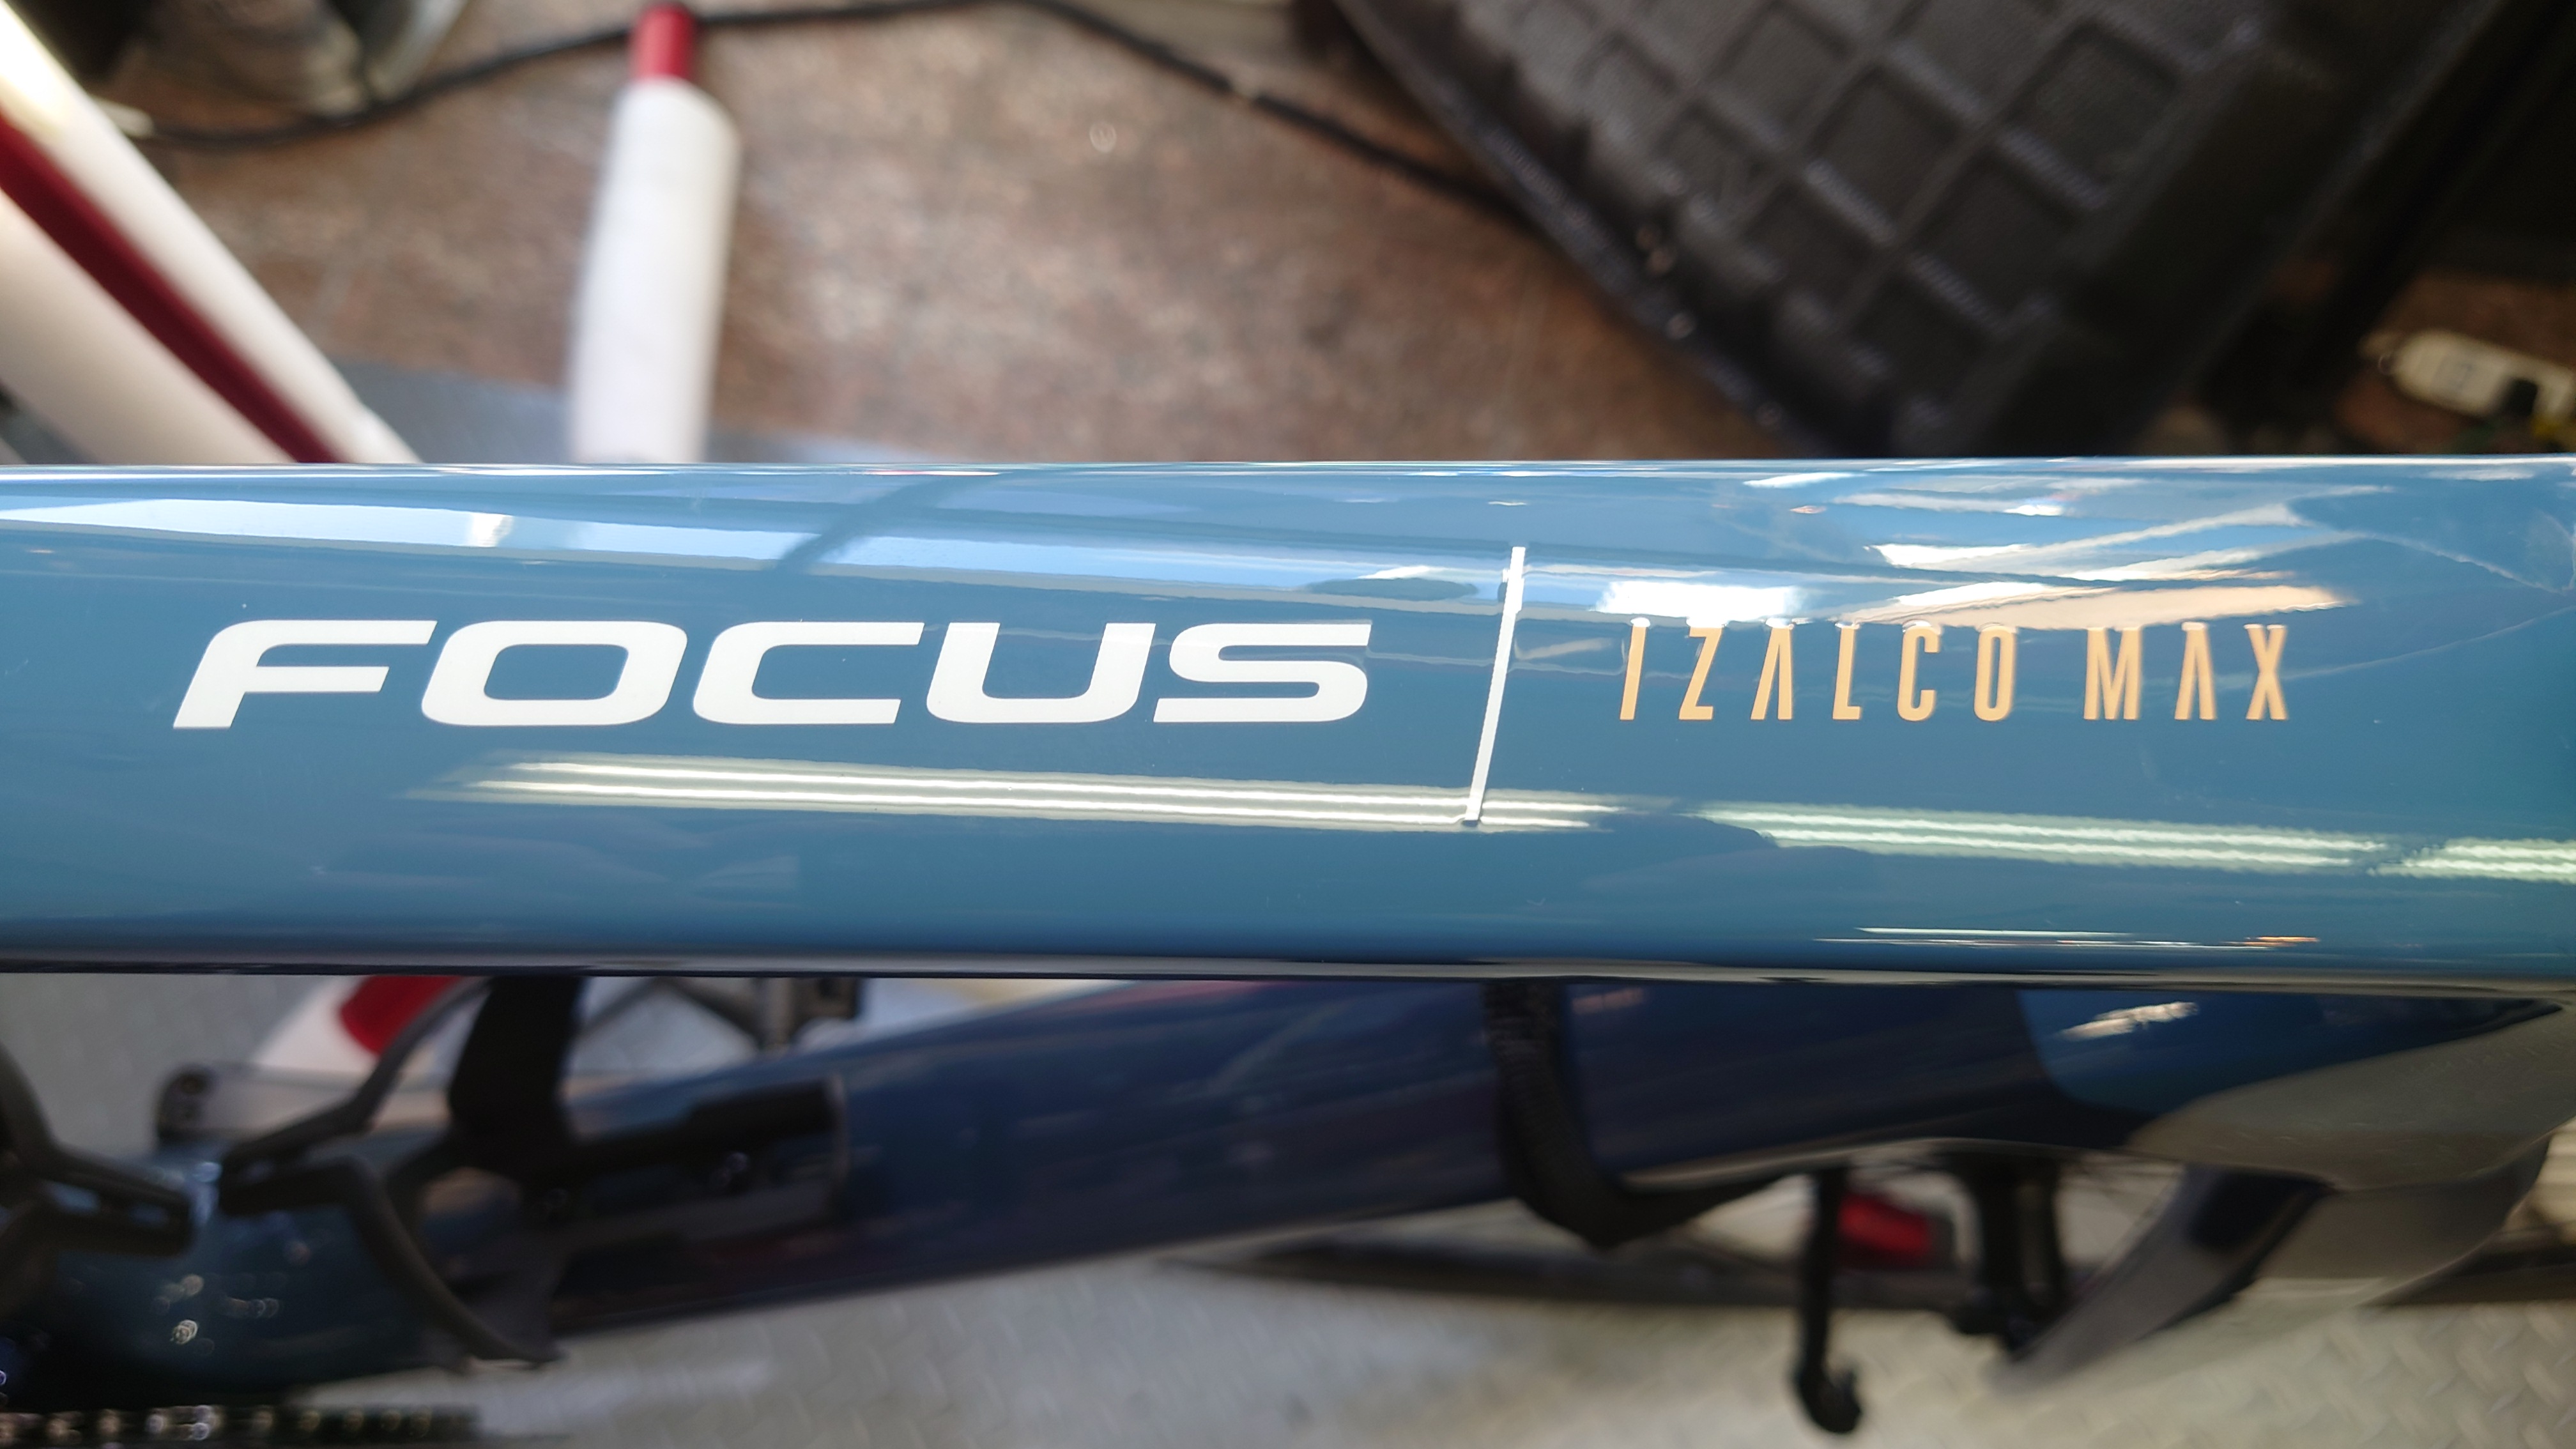 【FOCUS】「マイバイク」IZALCO MAX9組上がりました♪志木店に展示中です！ | 志木、新座、富士見、川越、所沢、さいたまでスポーツ自転車をお探しならY's Road 志木店